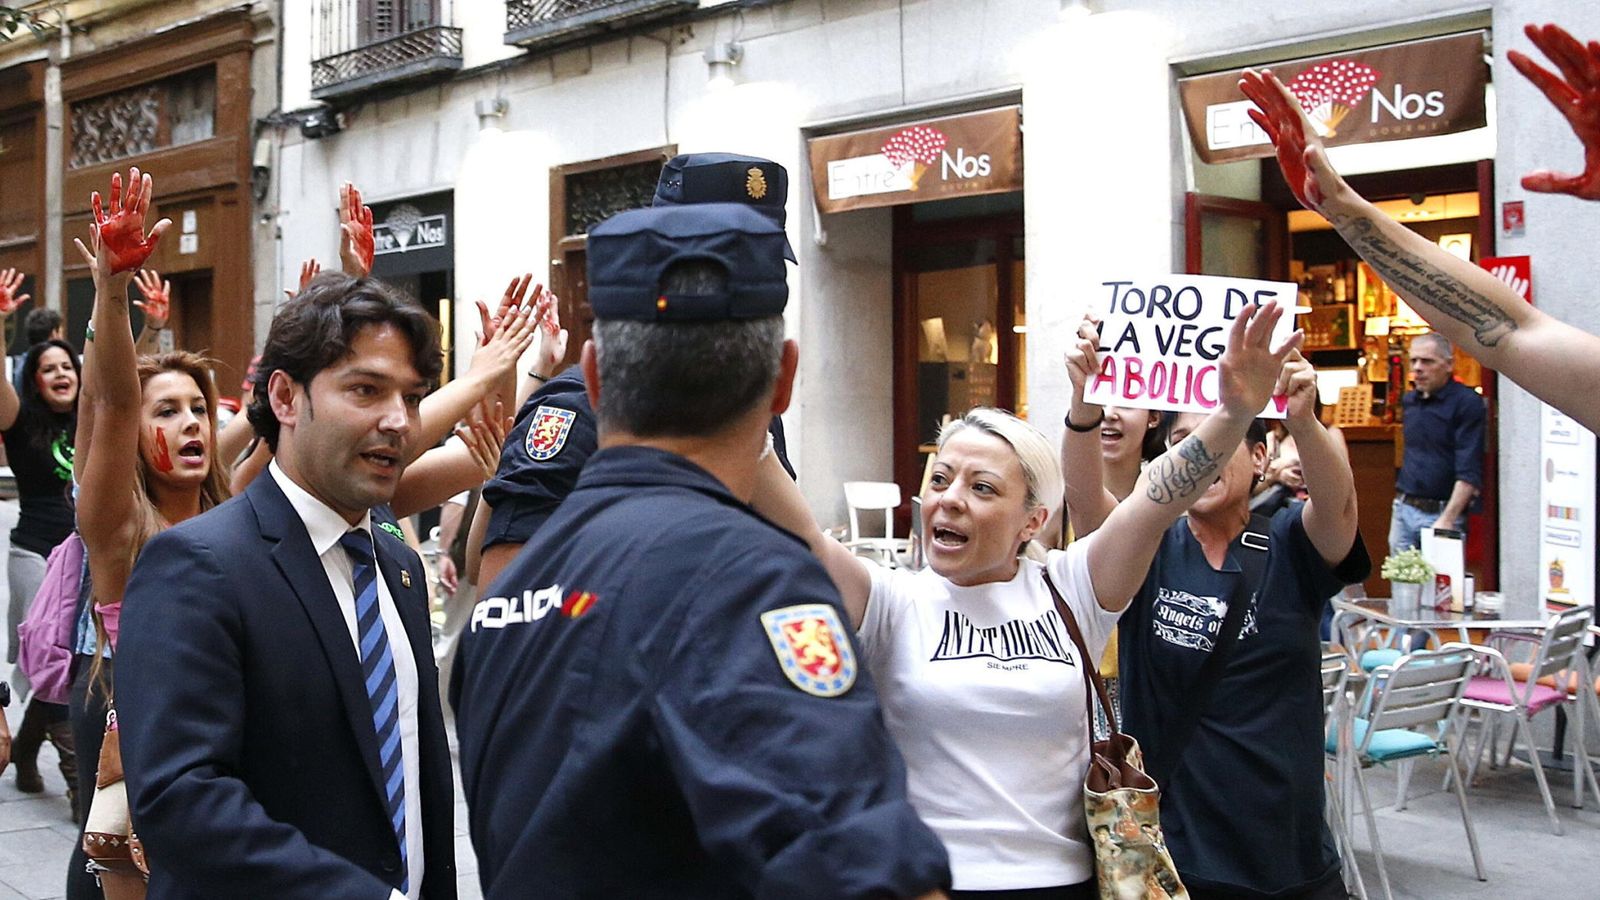 Foto: Jose Antonio Gonzalez, alcalde de Tordesillas es increpado por personas antitaurinas hace unos días. (EFE)